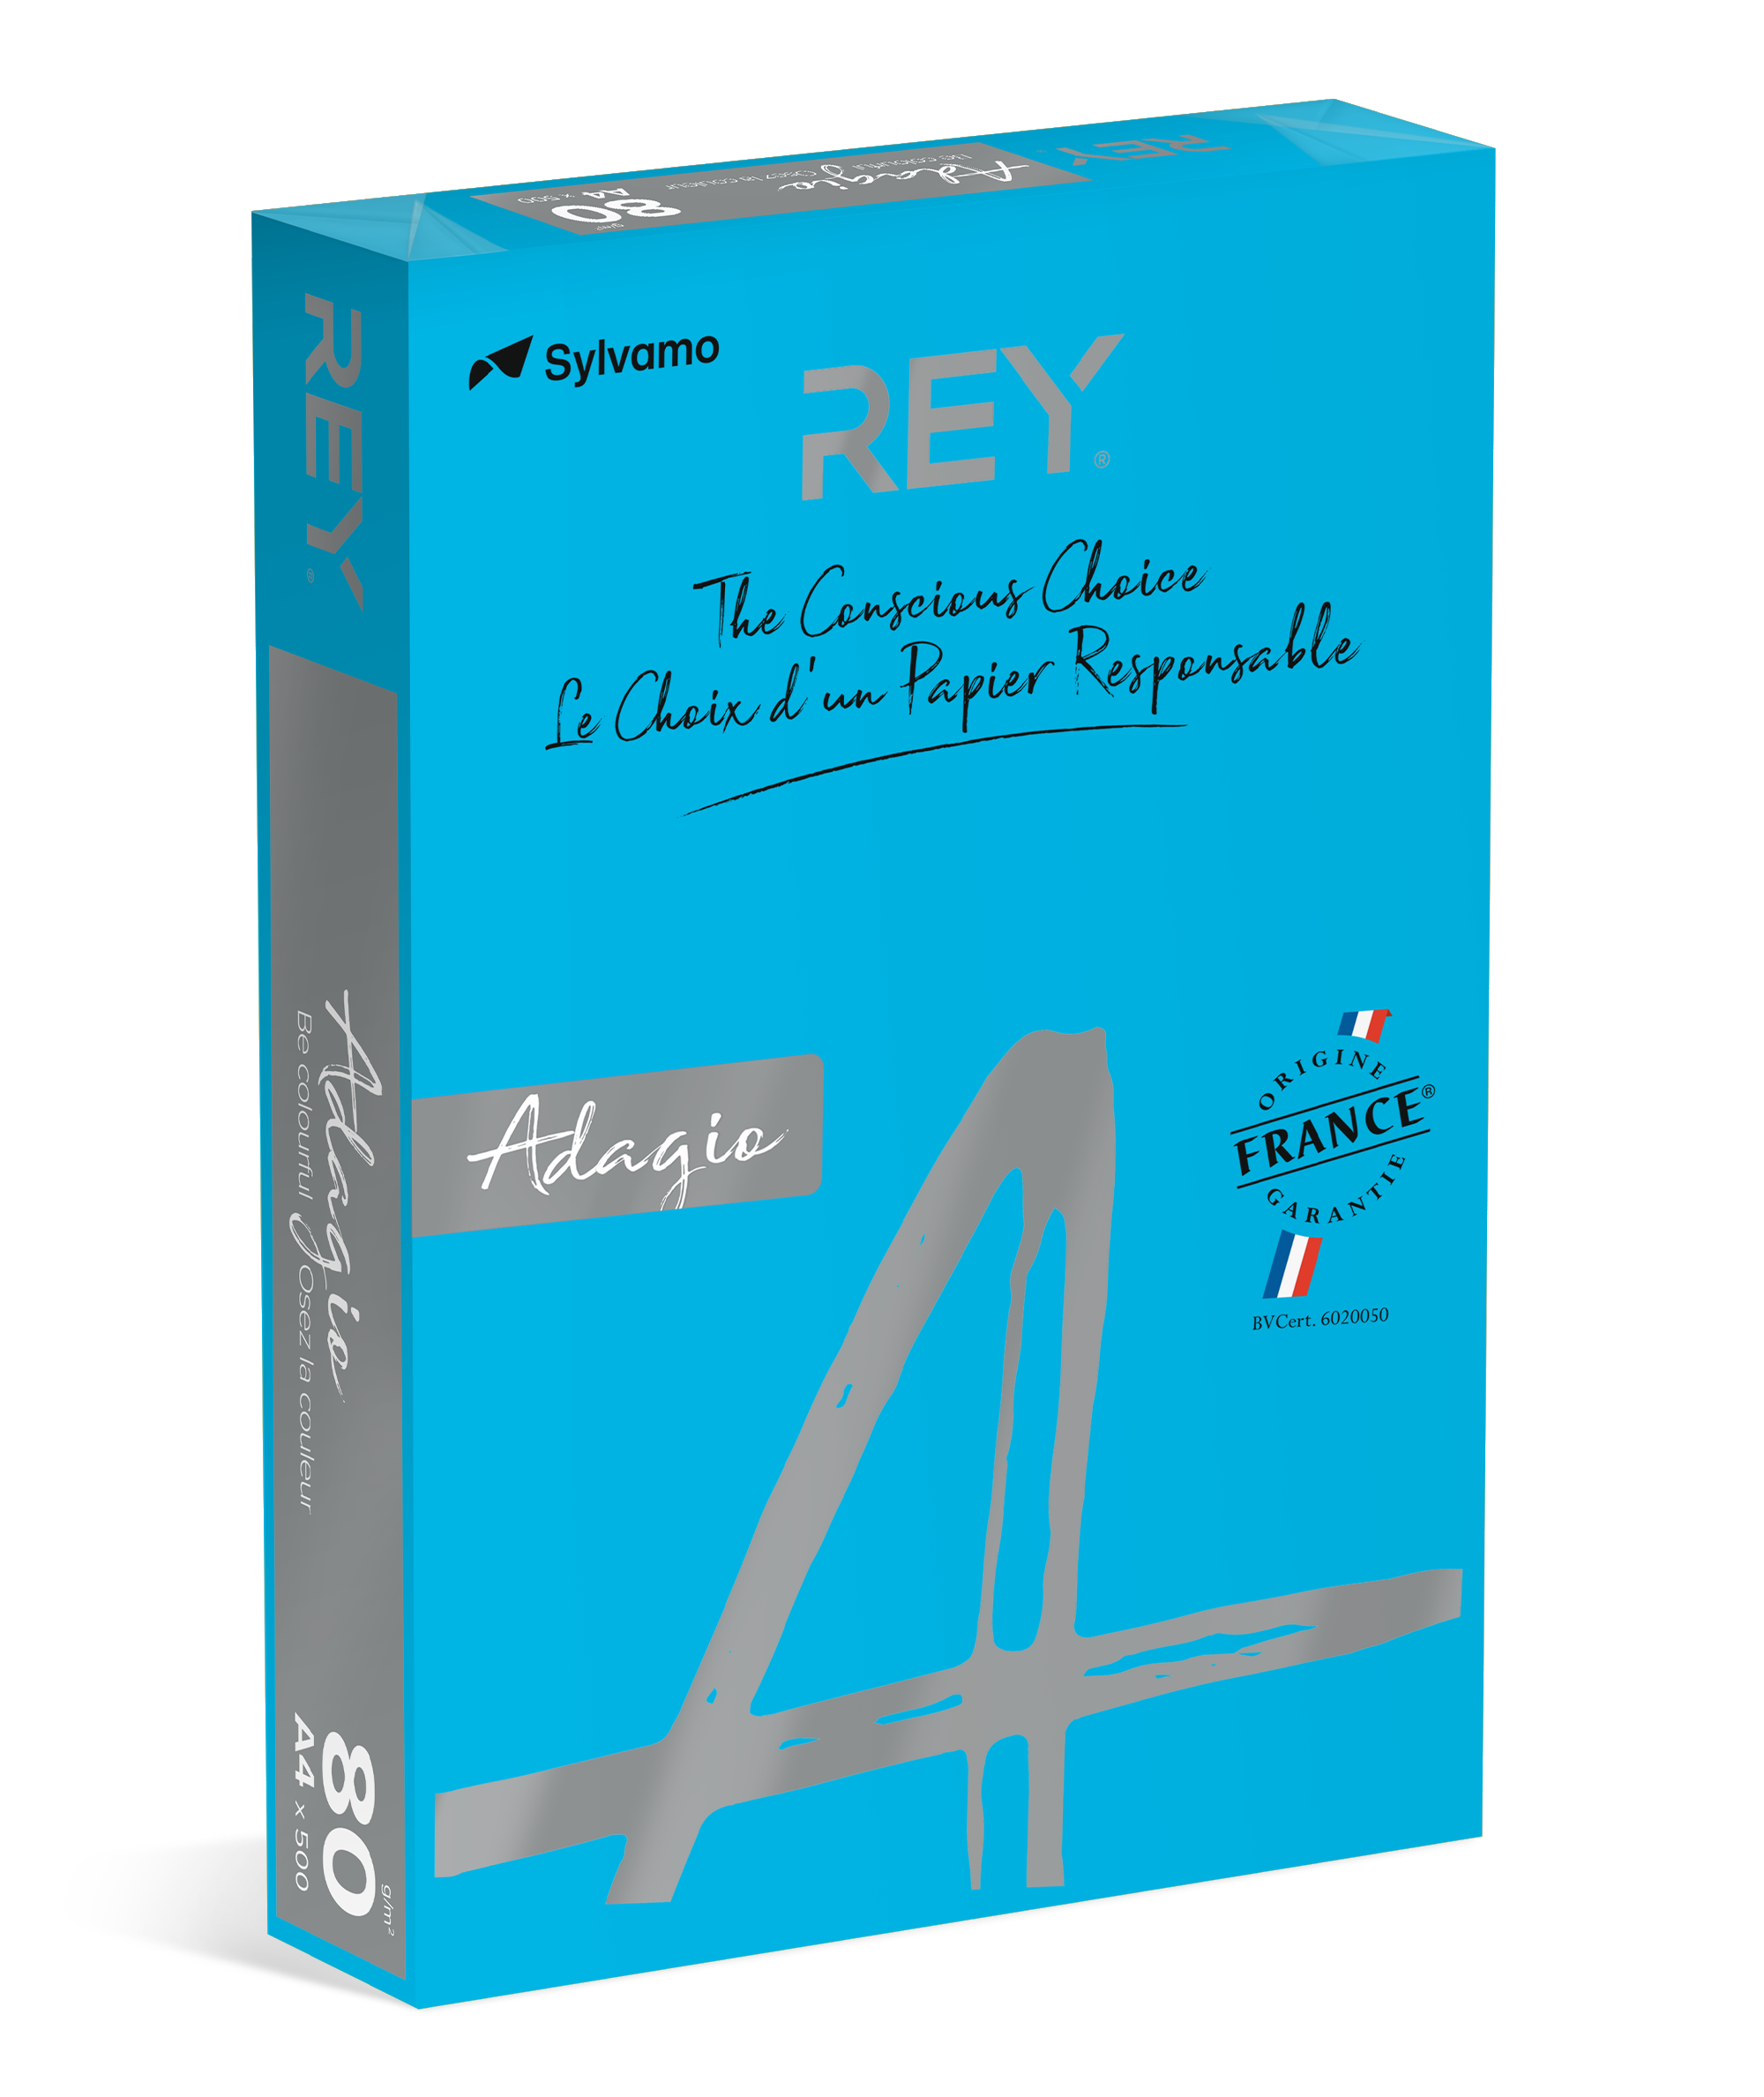 Rey Adagio - Papier couleur - A4 (210 x 297 mm) - 80 g/m² - 200